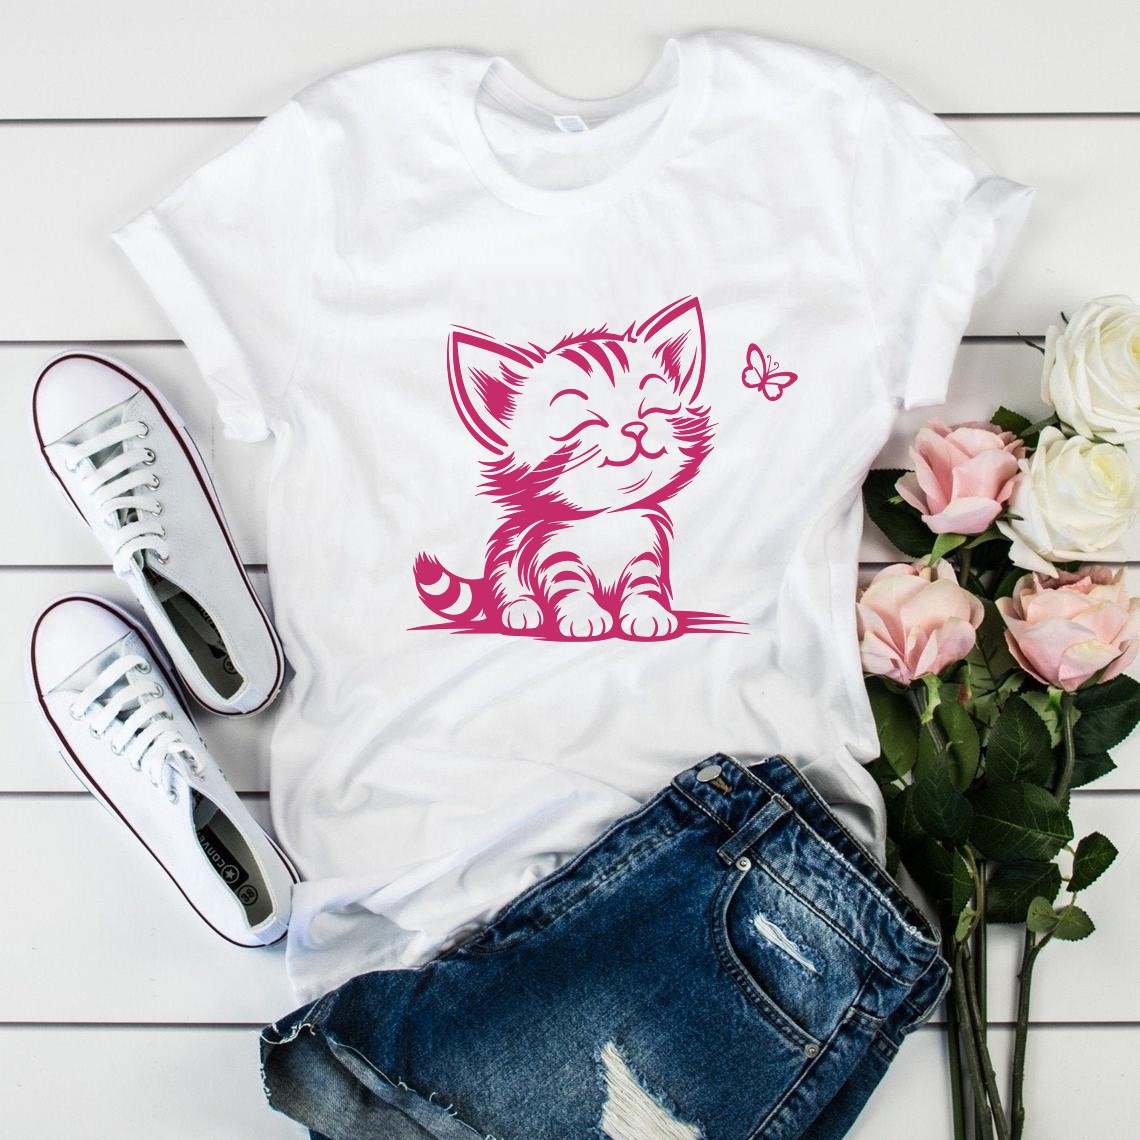 chaton paillon motif thermocollant t-shirt femme homme enfant bébé